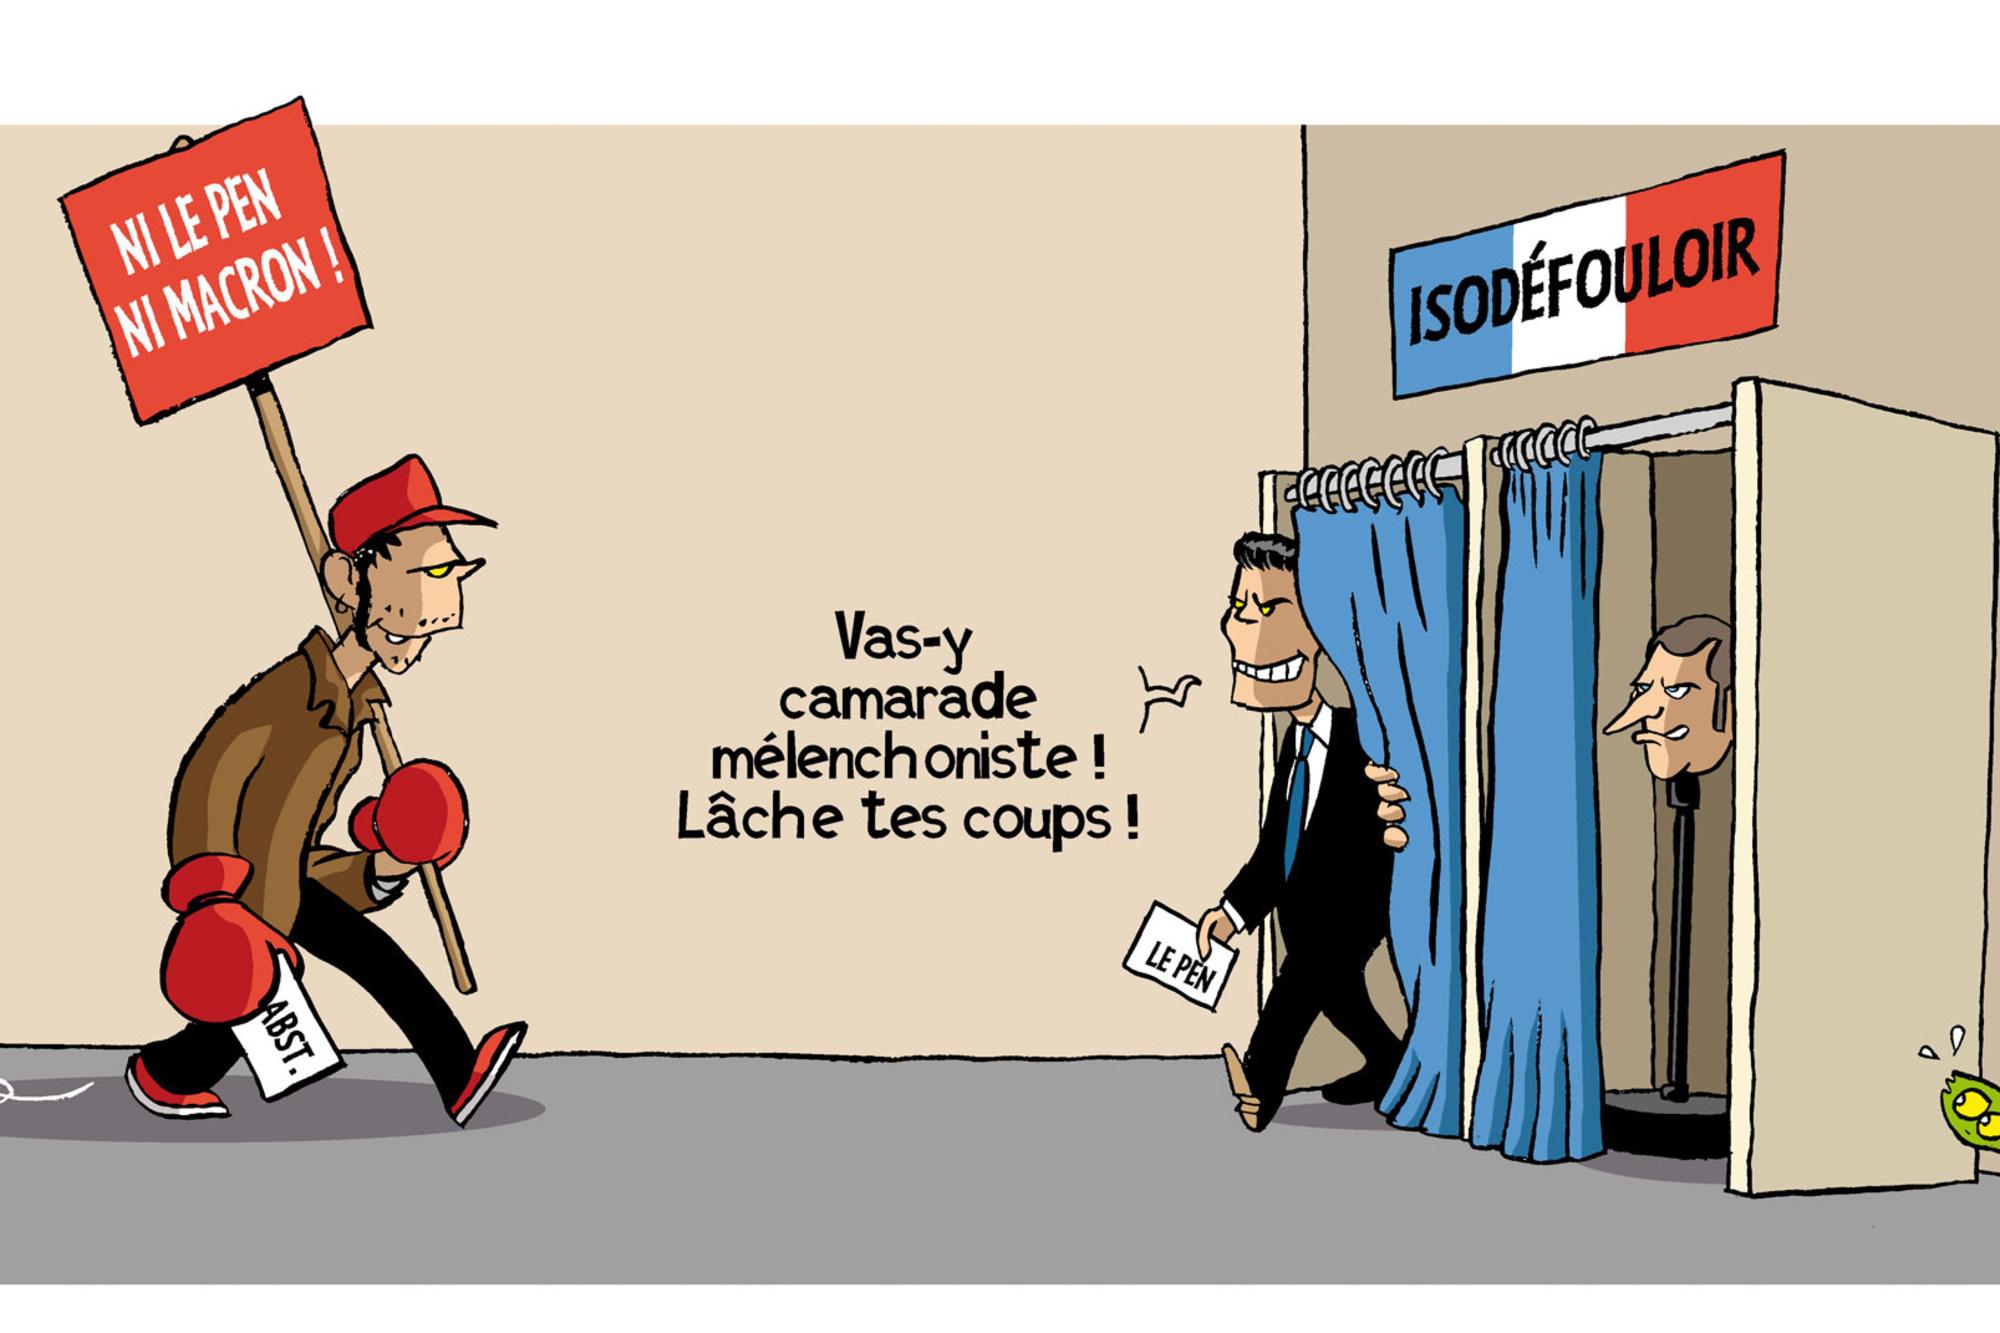 Les électeurs de Jean-Luc Mélenchon pourraient majoritairement s'abstenir au second tour de l'élection présidentielle.